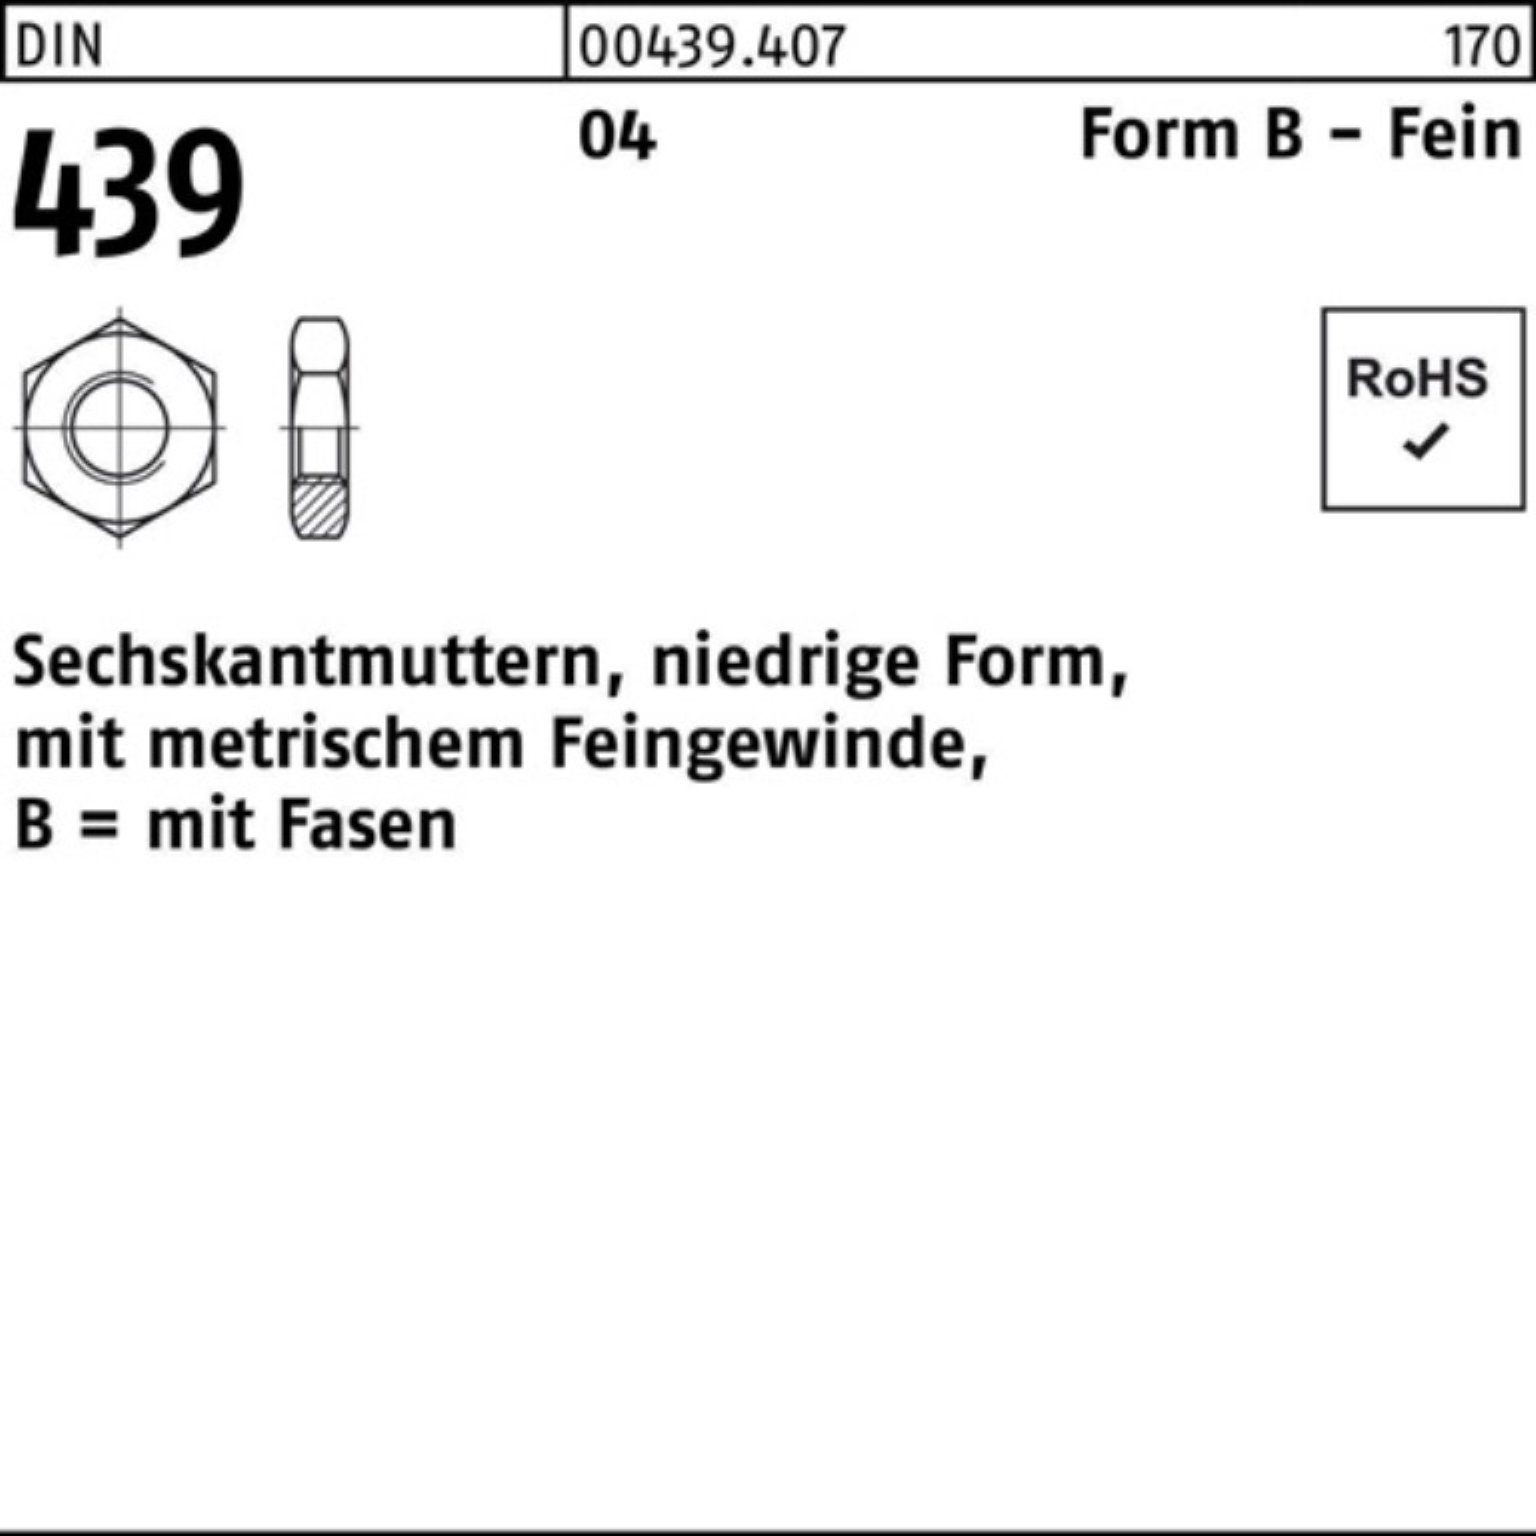 Reyher Muttern Automatenst 439/ISO 42x 3 Sechskantmutter BM 4035 DIN 100er Pack FormB